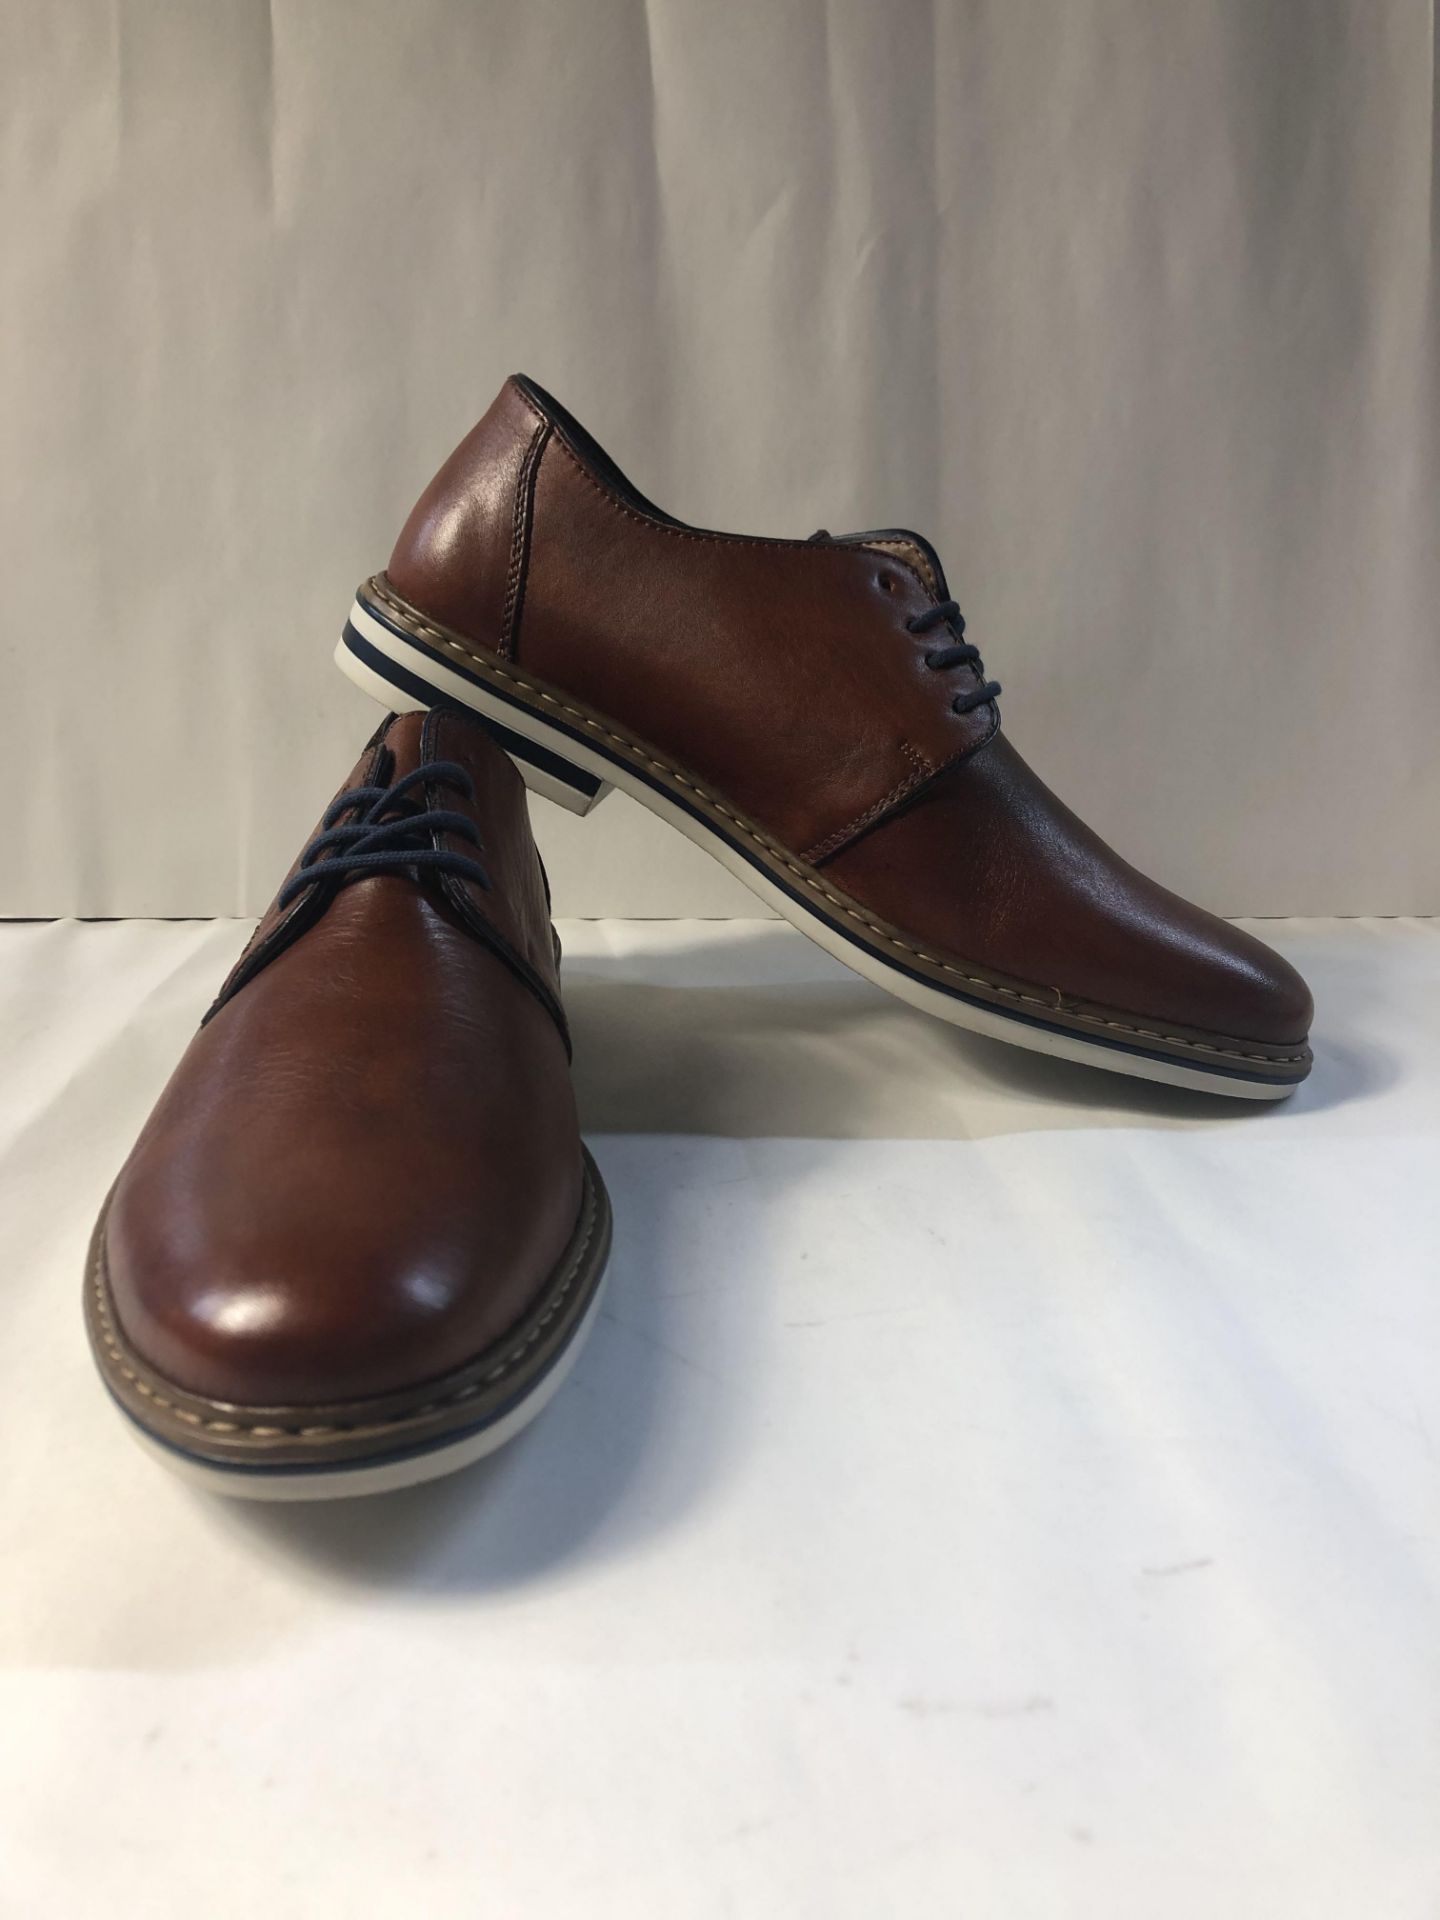 Rieker Men's Leather Lace up Derby Oxford Shoe (B1422-24) Shoetique86821 |4059954592457 - Image 2 of 3